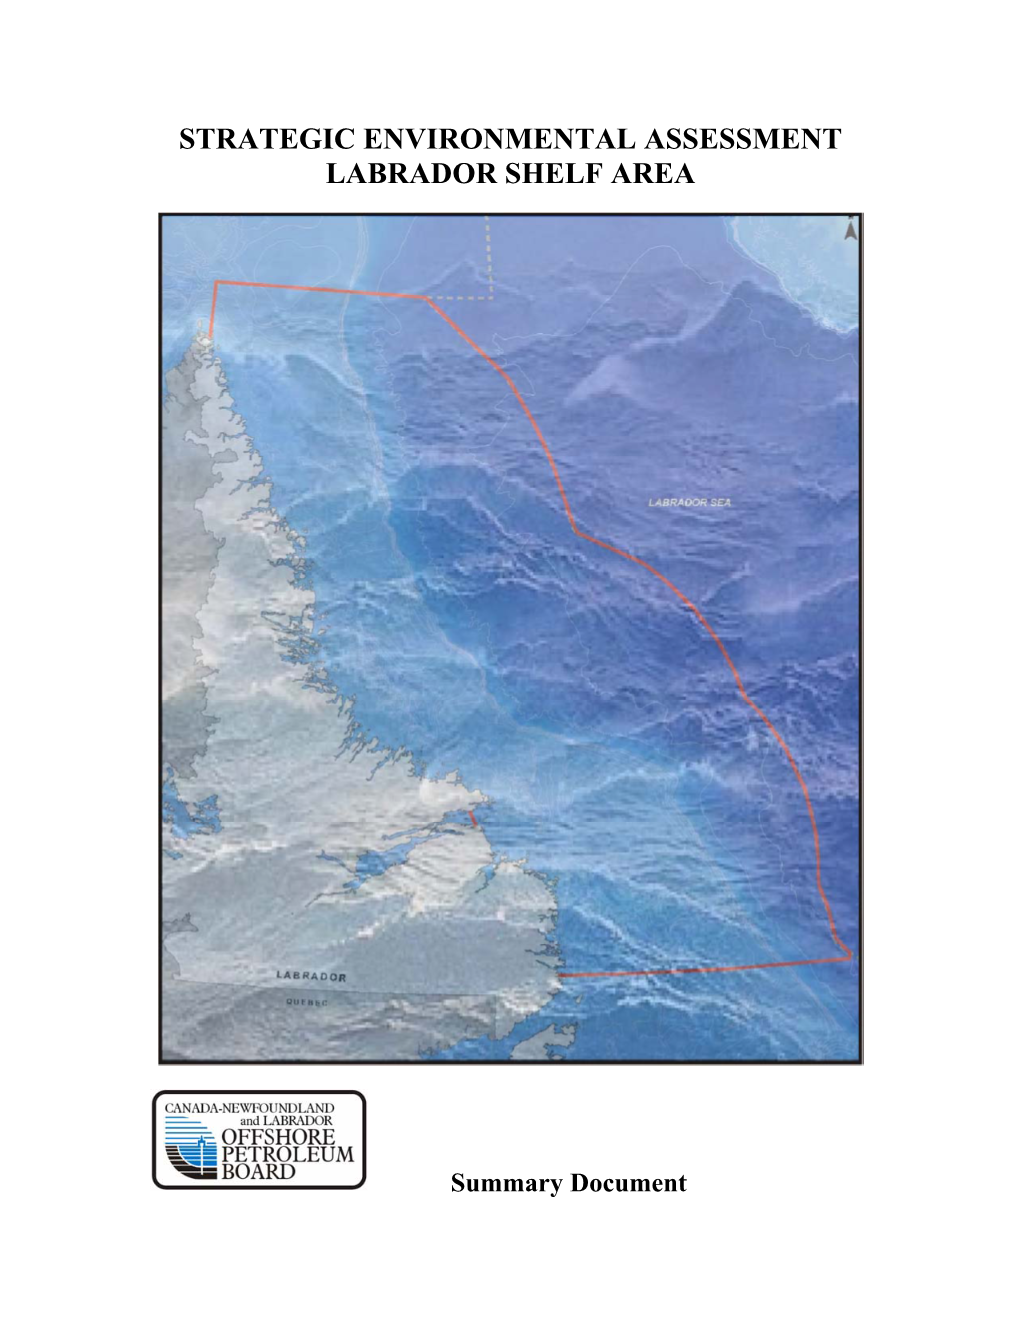 Strategic Environmental Assessment Labrador Shelf Area